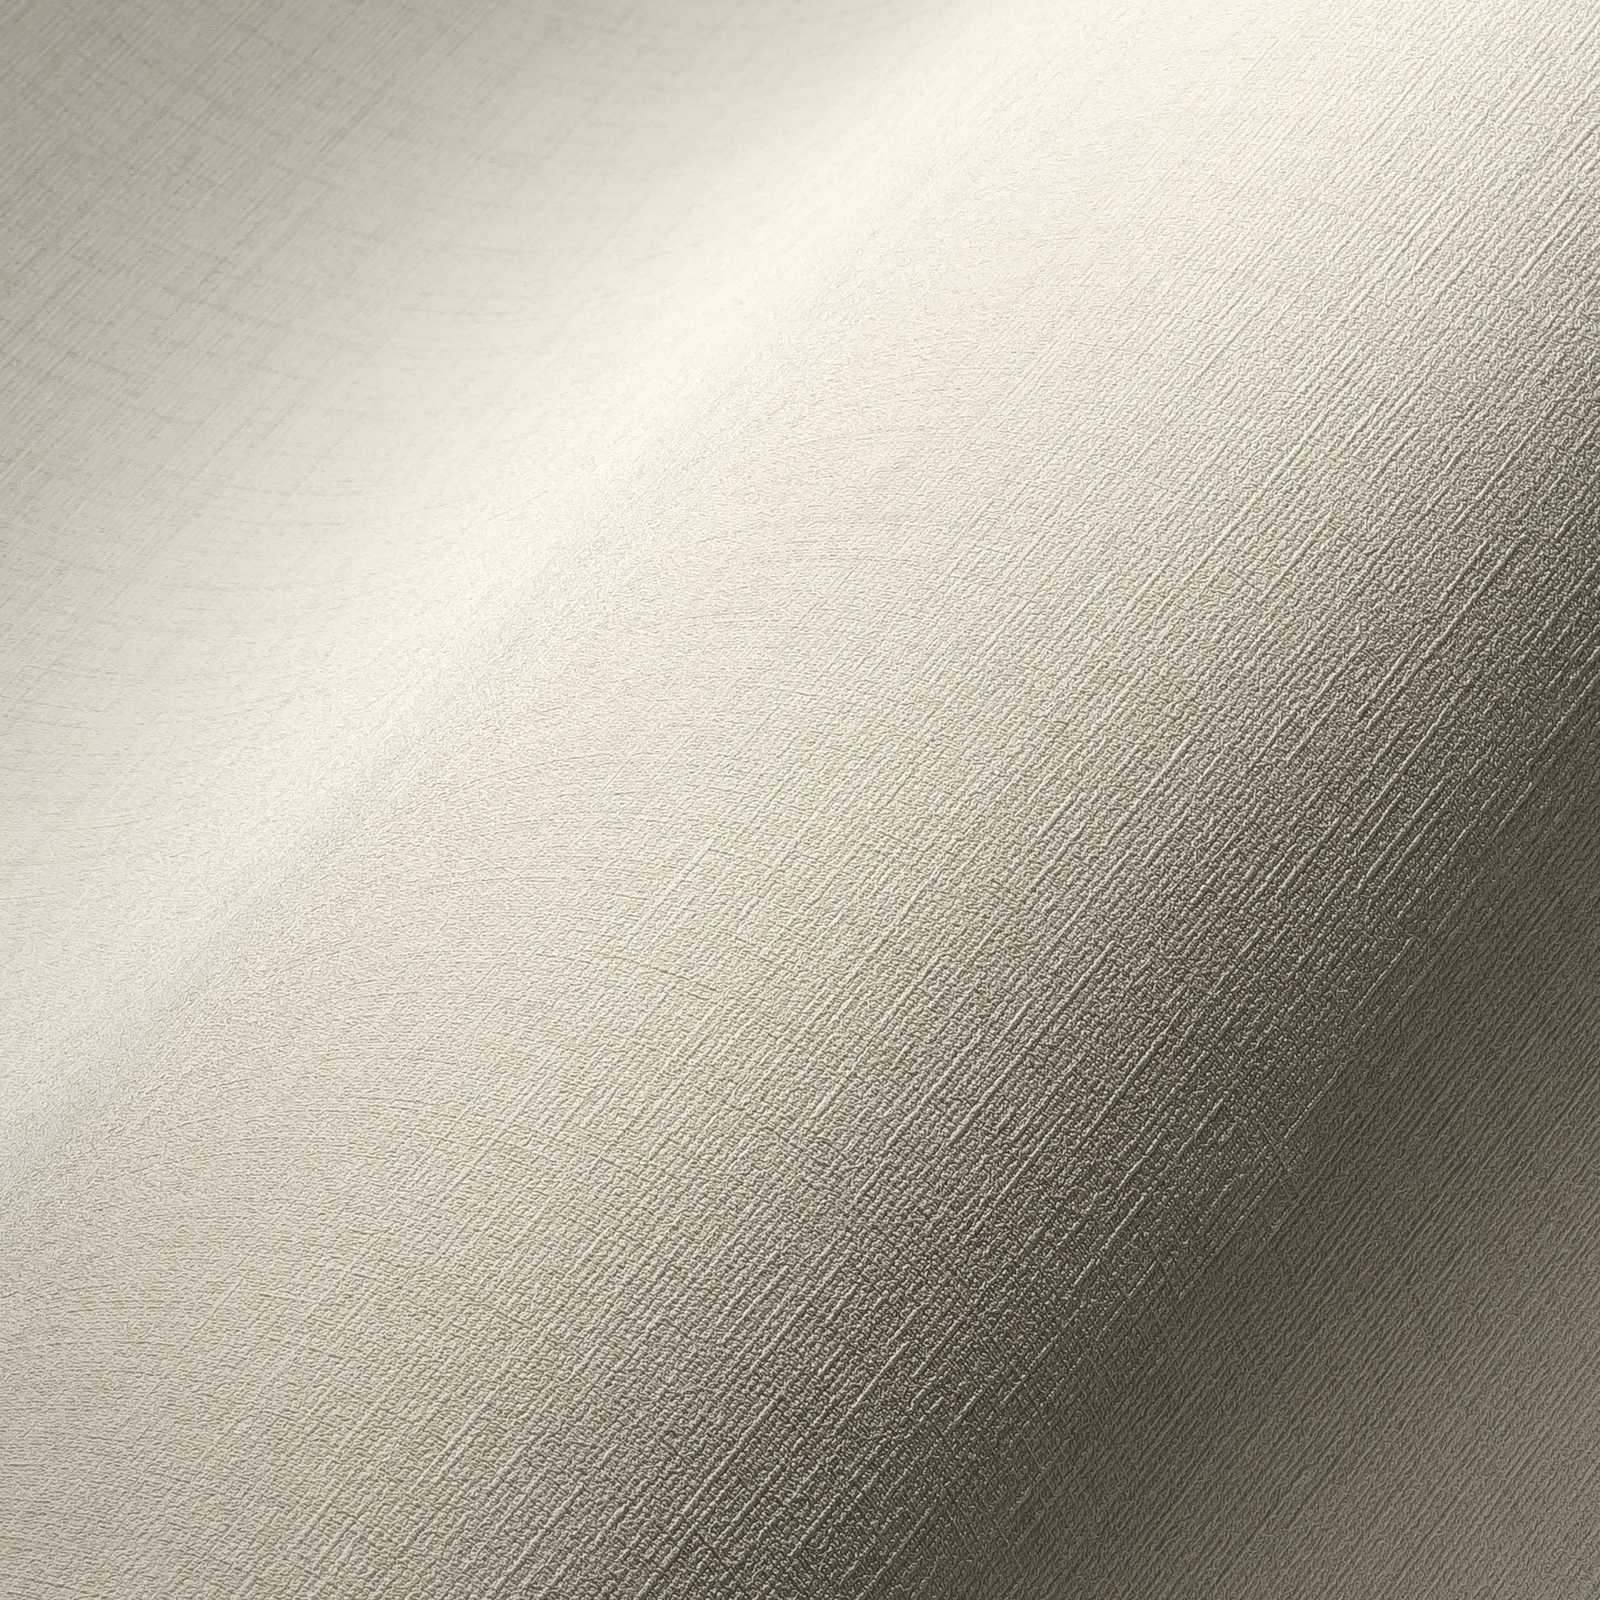             Creme-Weiße Tapete mit Textiloptik & Struktureffekt
        